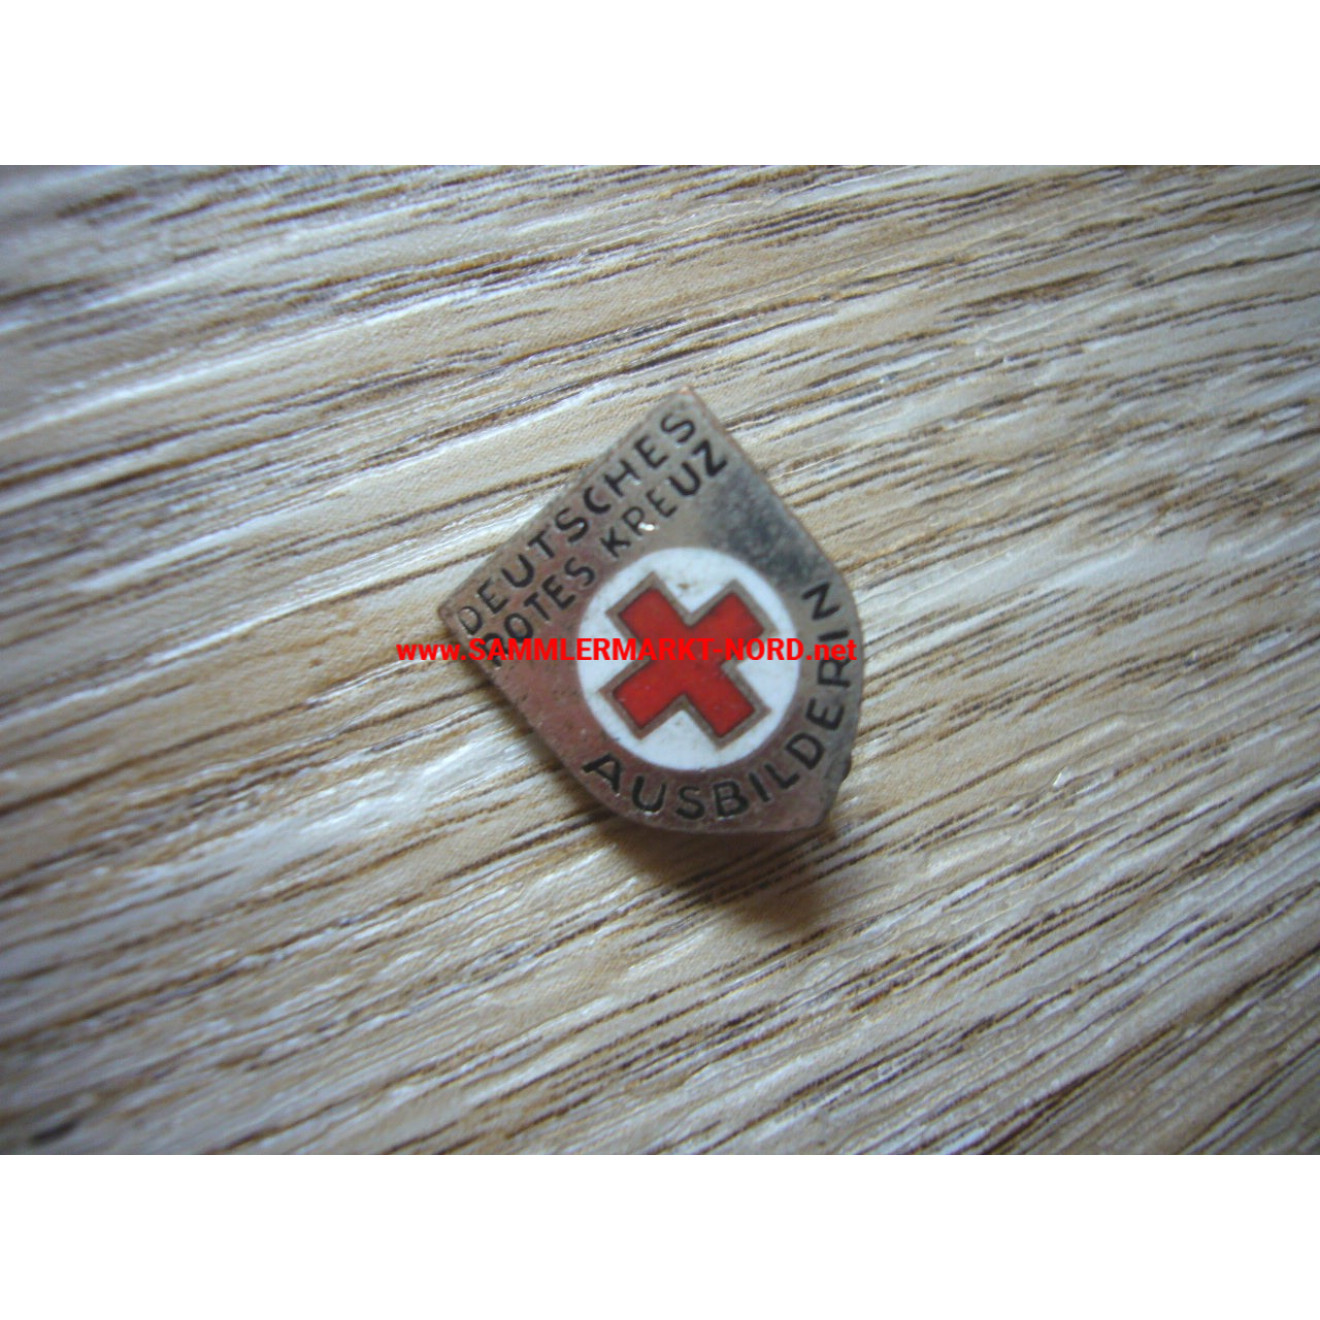 DRK German Red Cross - Instructor Badge